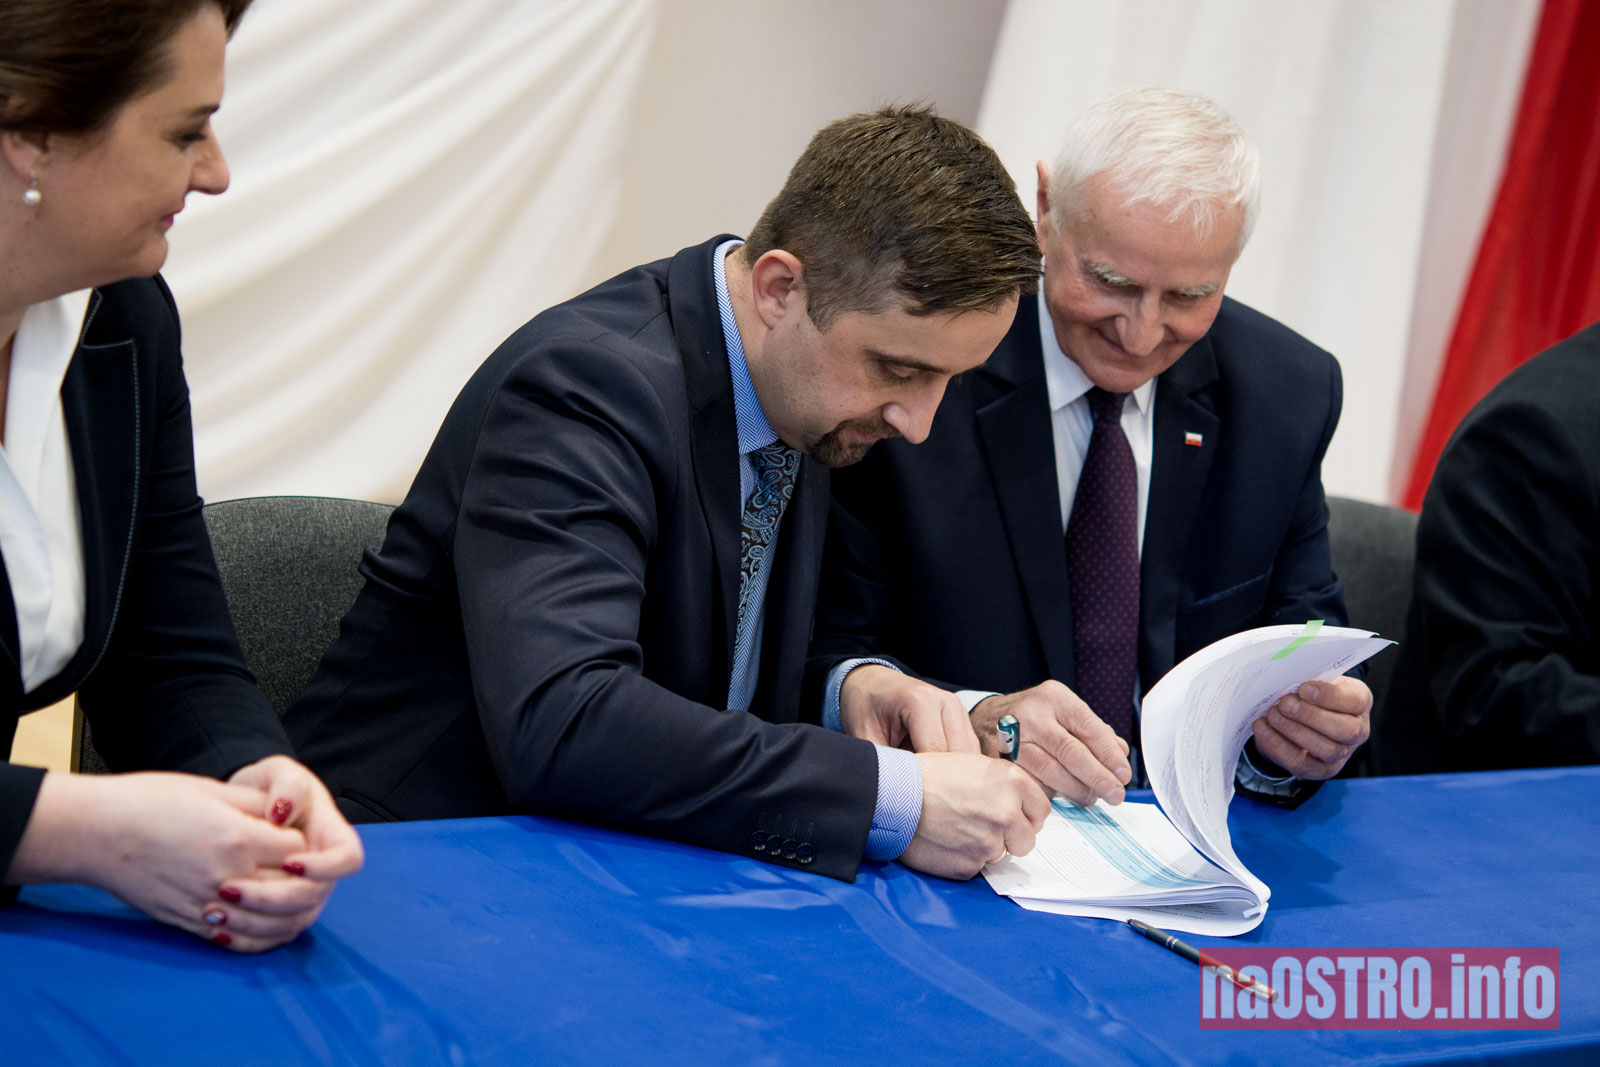 NaOSTROinfo Podpisanie umów na budowę wiejskich świetlic Bałtów 2021-24